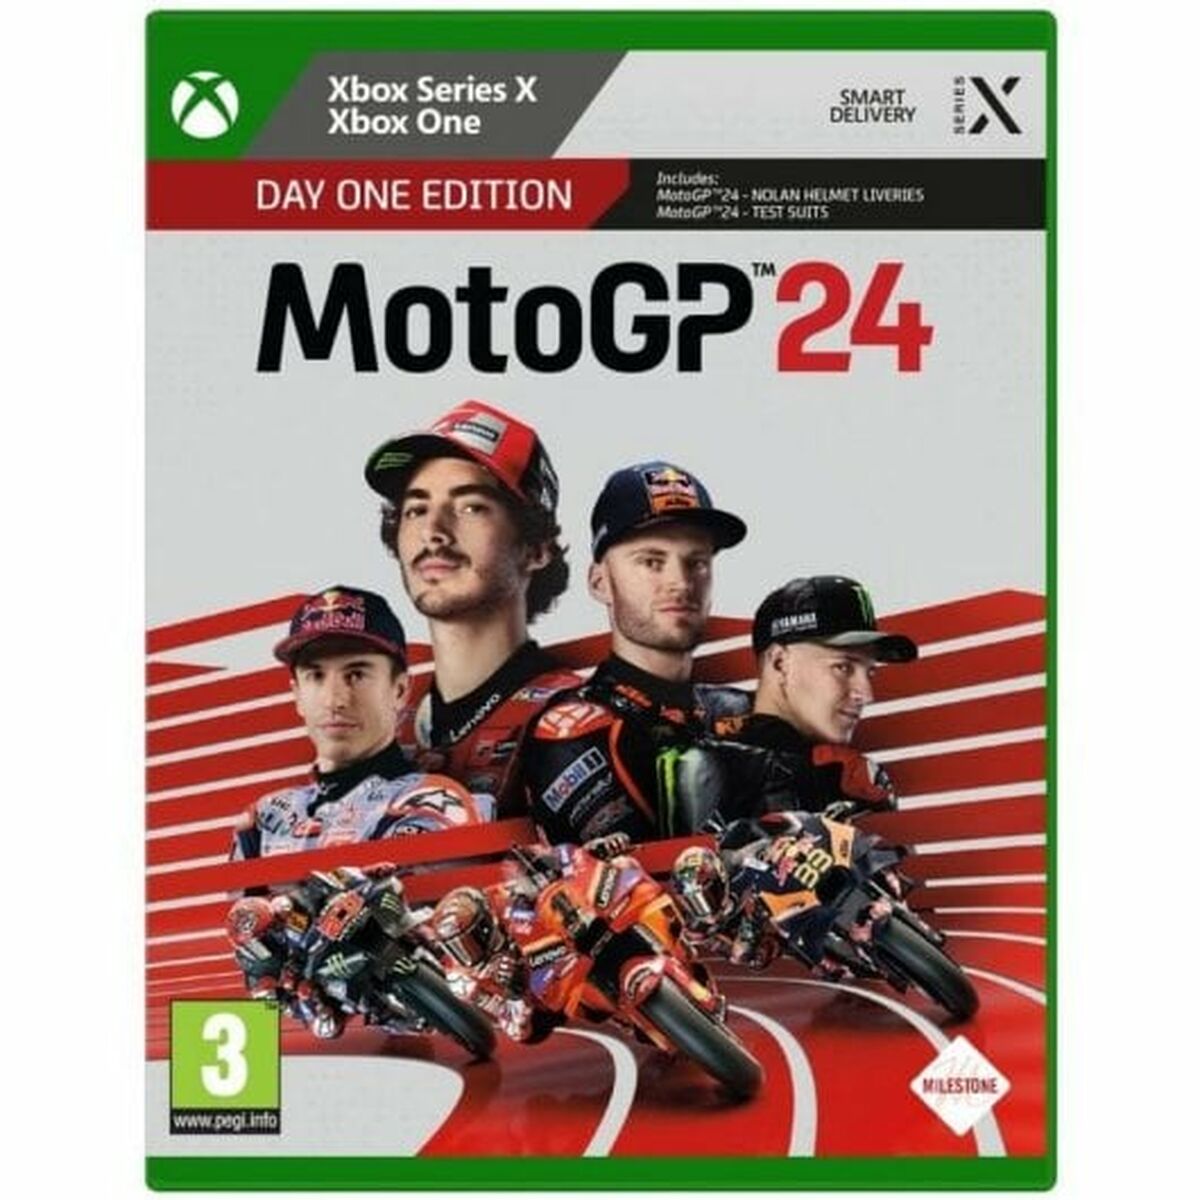 Osta tuote Xbox One / Series X videopeli Milestone MotoGP 24 Day One verkkokaupastamme Korhone: Tietokoneet & Elektroniikka 20% alennuksella koodilla VIIKONLOPPU